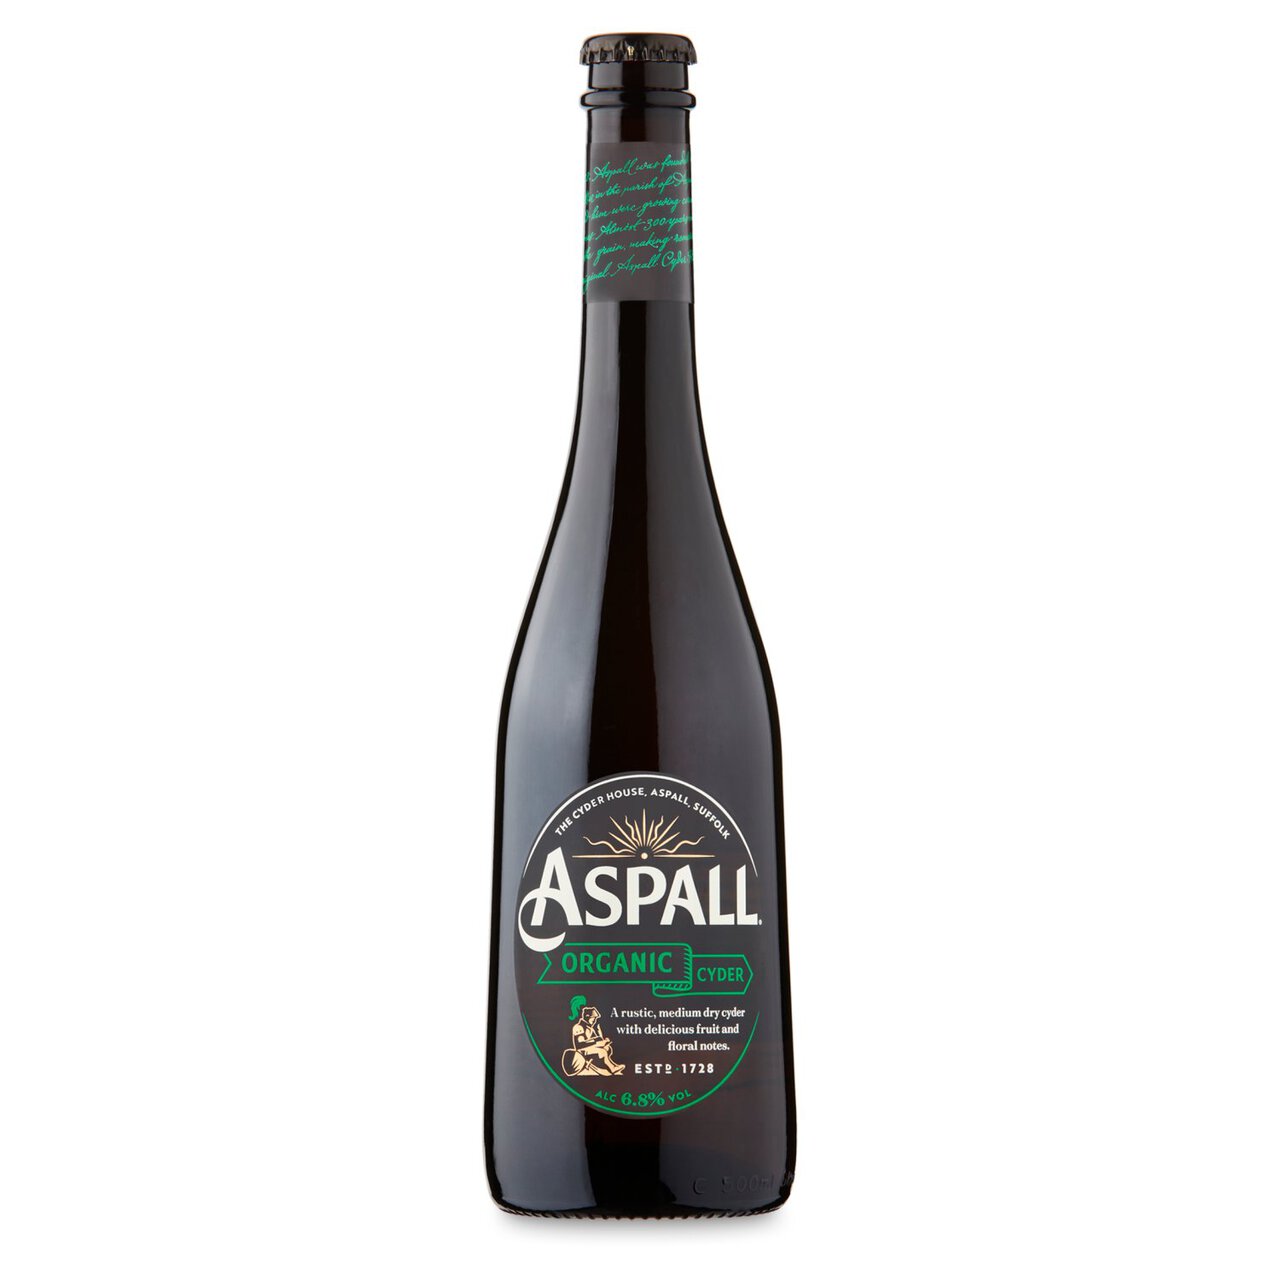 Aspall Suffolk Organic Cyder 500ml